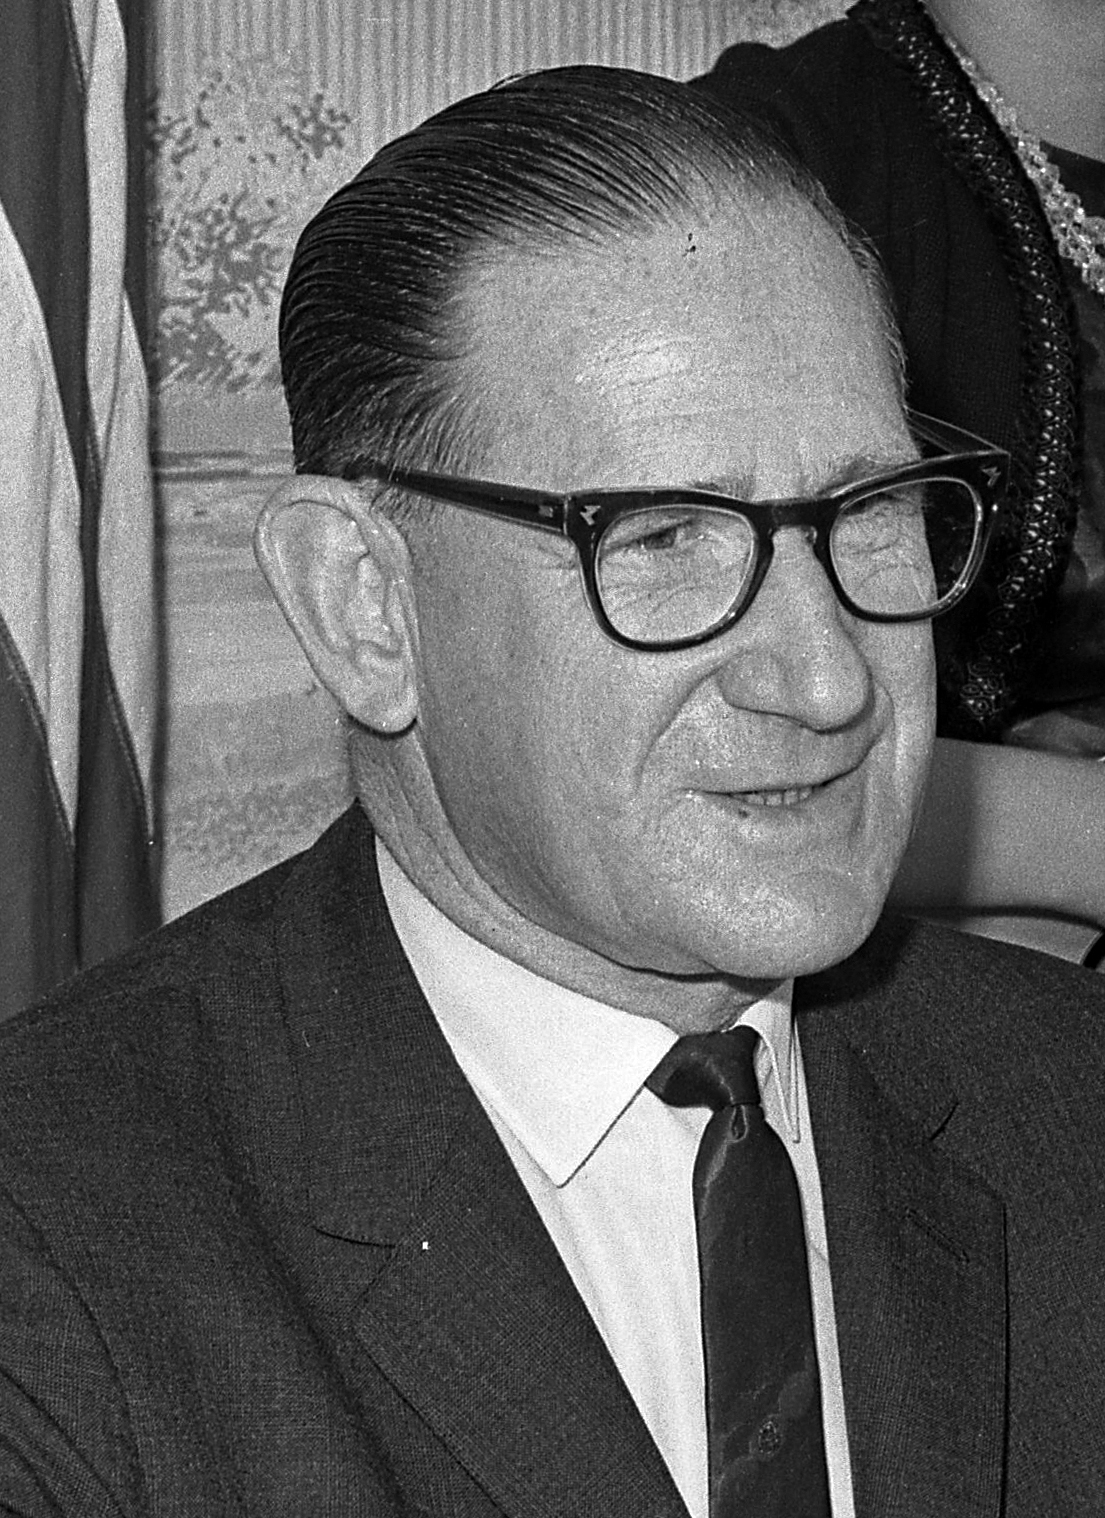 Schwarz in 1964